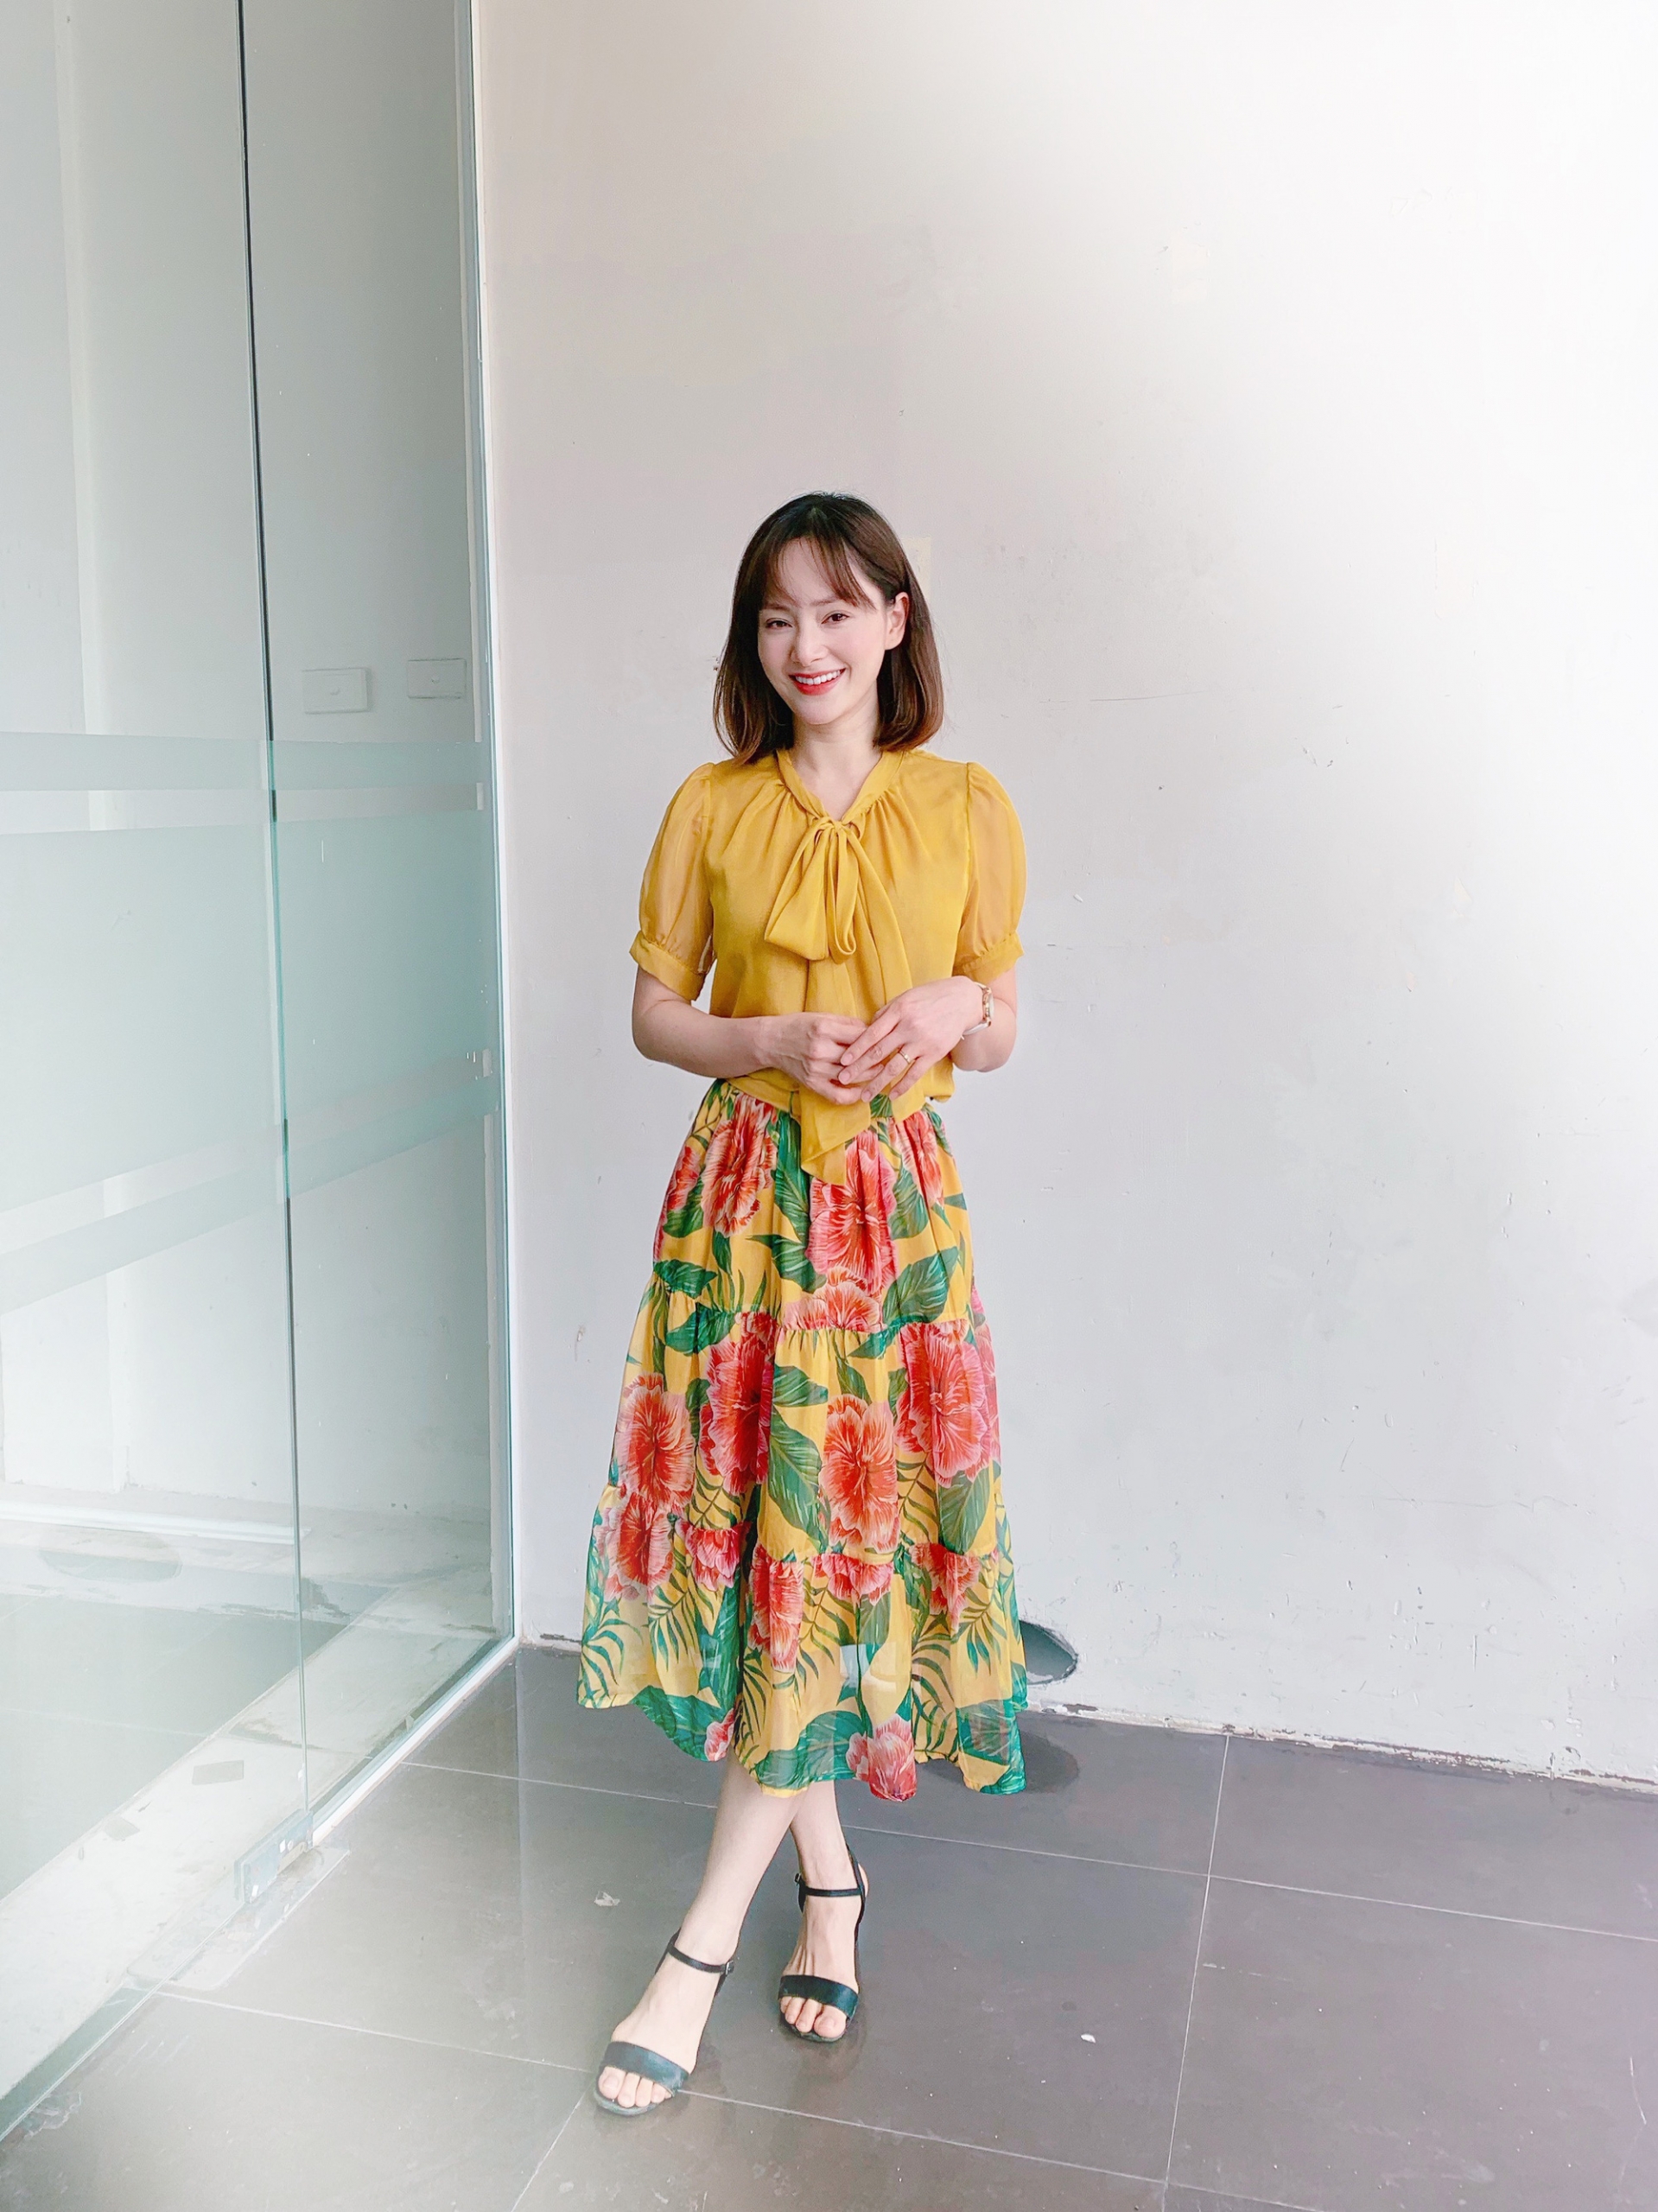 Trang phục chủ yếu của Lan Phương là áo sơ mi hoặc áo blouse phối cùng chân váy dài.